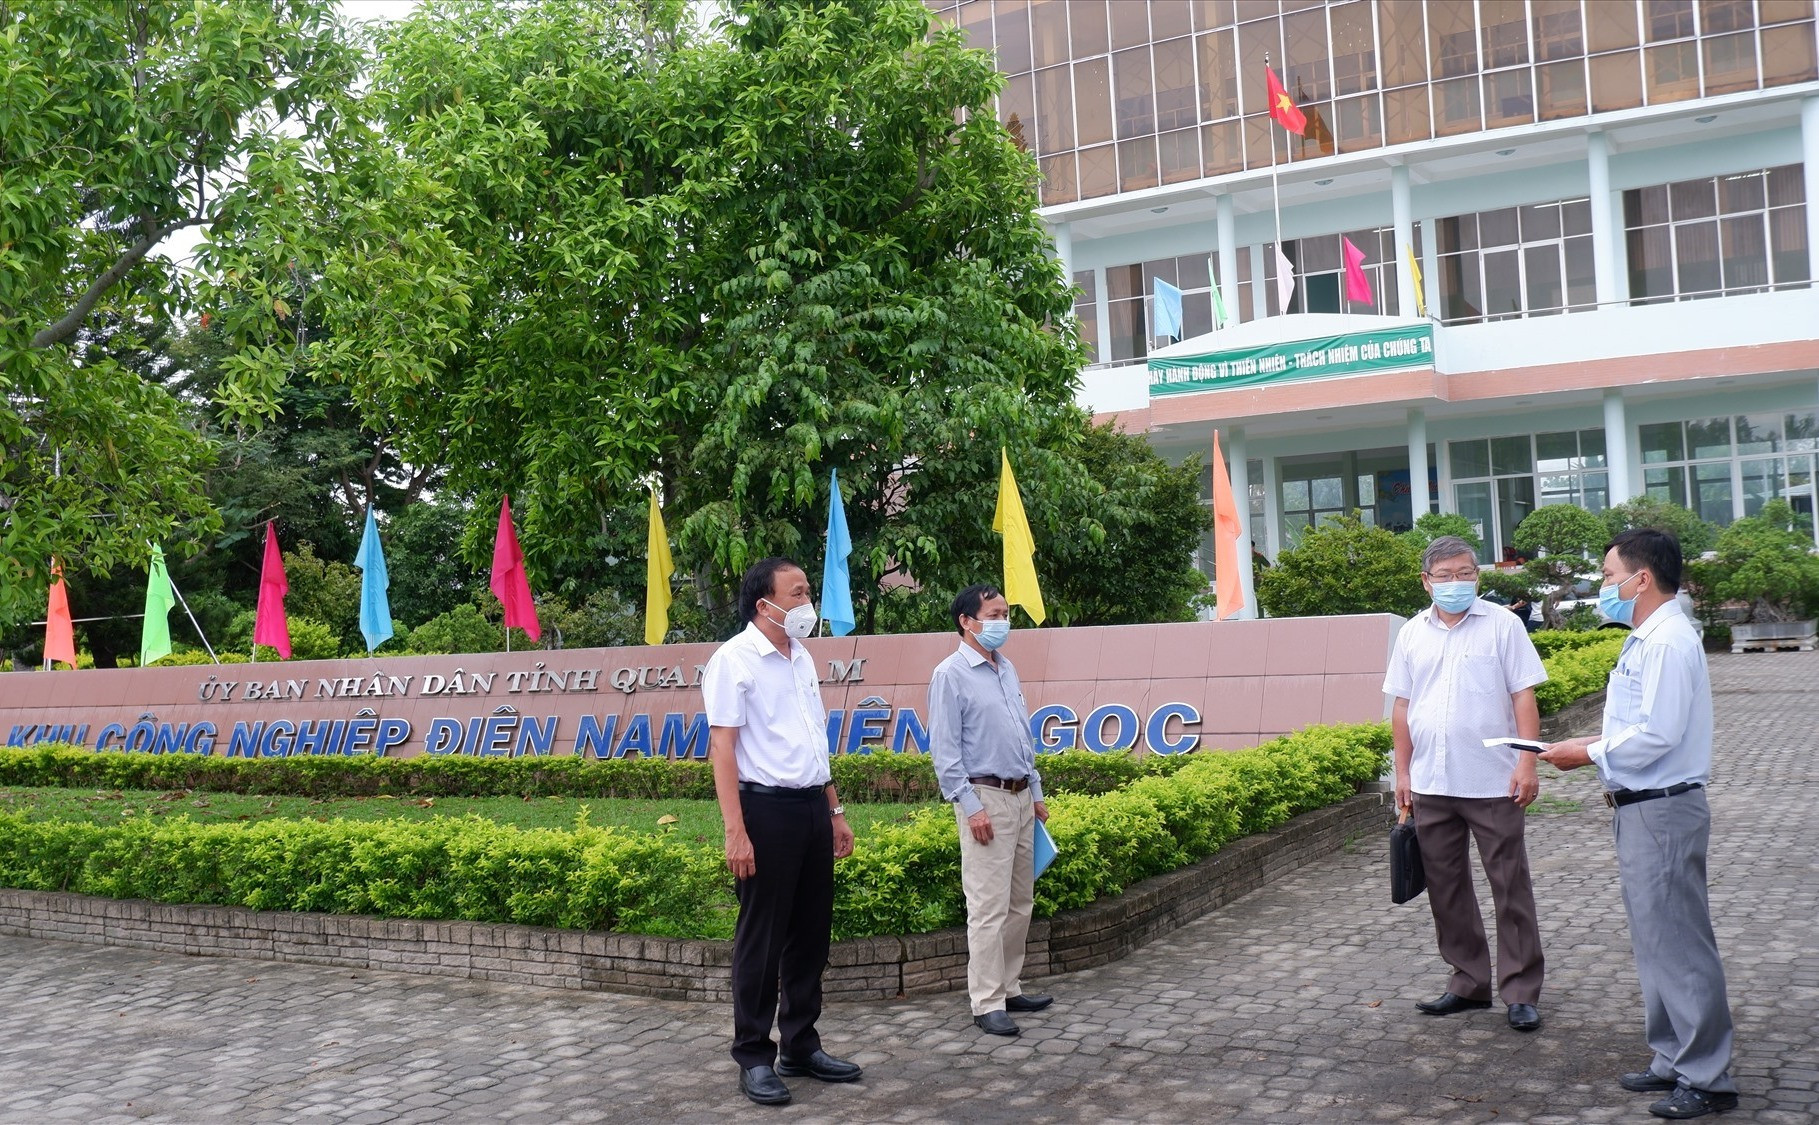 Đoàn Sở Y tế làm việc về công tác phòng chống dịch tại Khu Công nghiệp Điện Nam - Điện Ngọc vào sáng nay. Ảnh: X.H